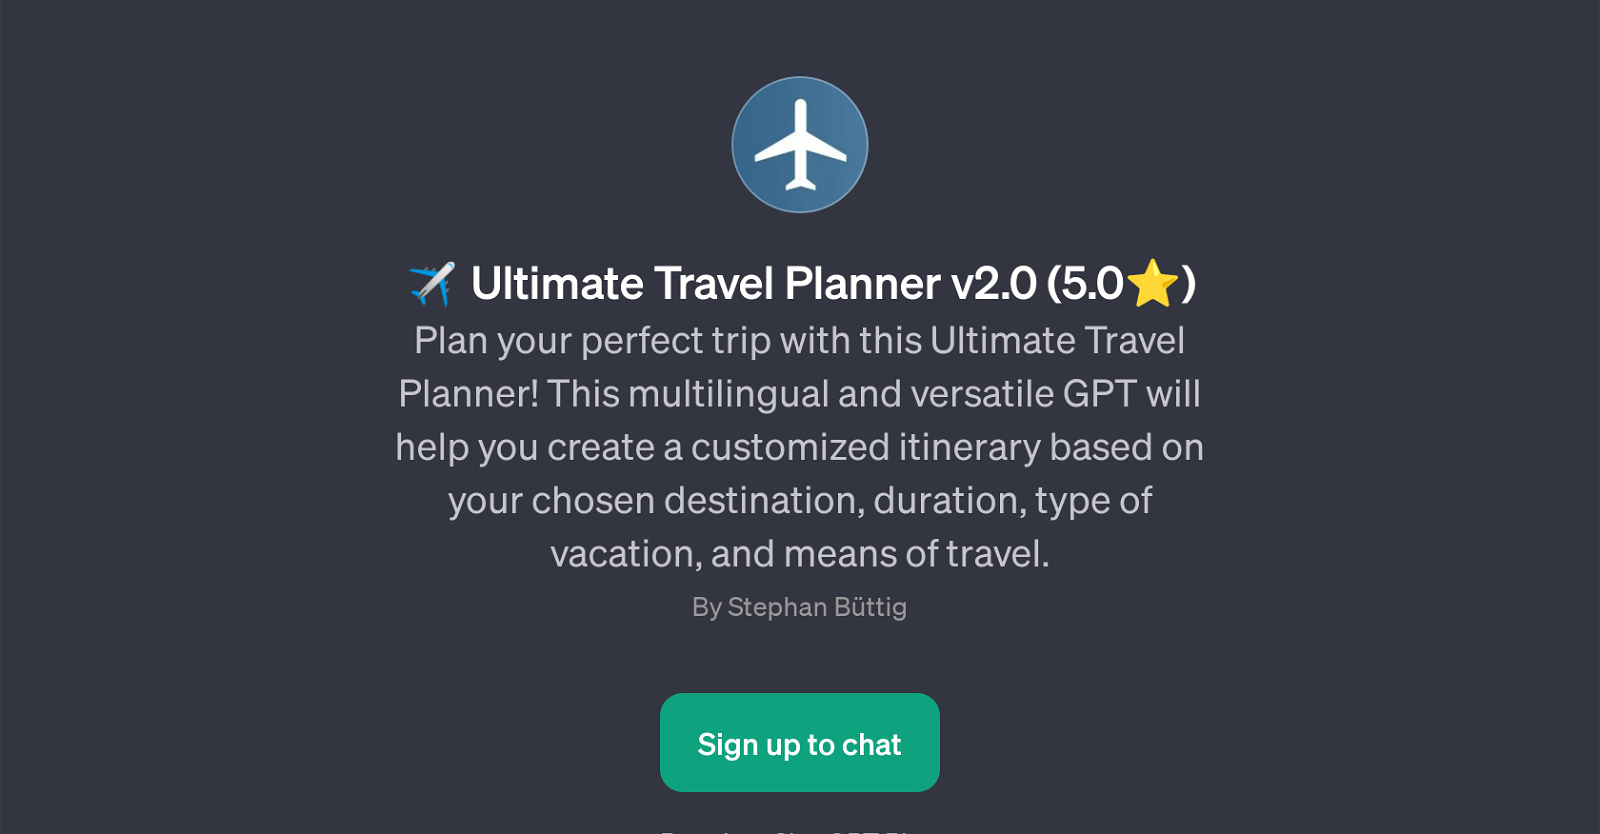 Ultimate Travel Planner v2.0 website